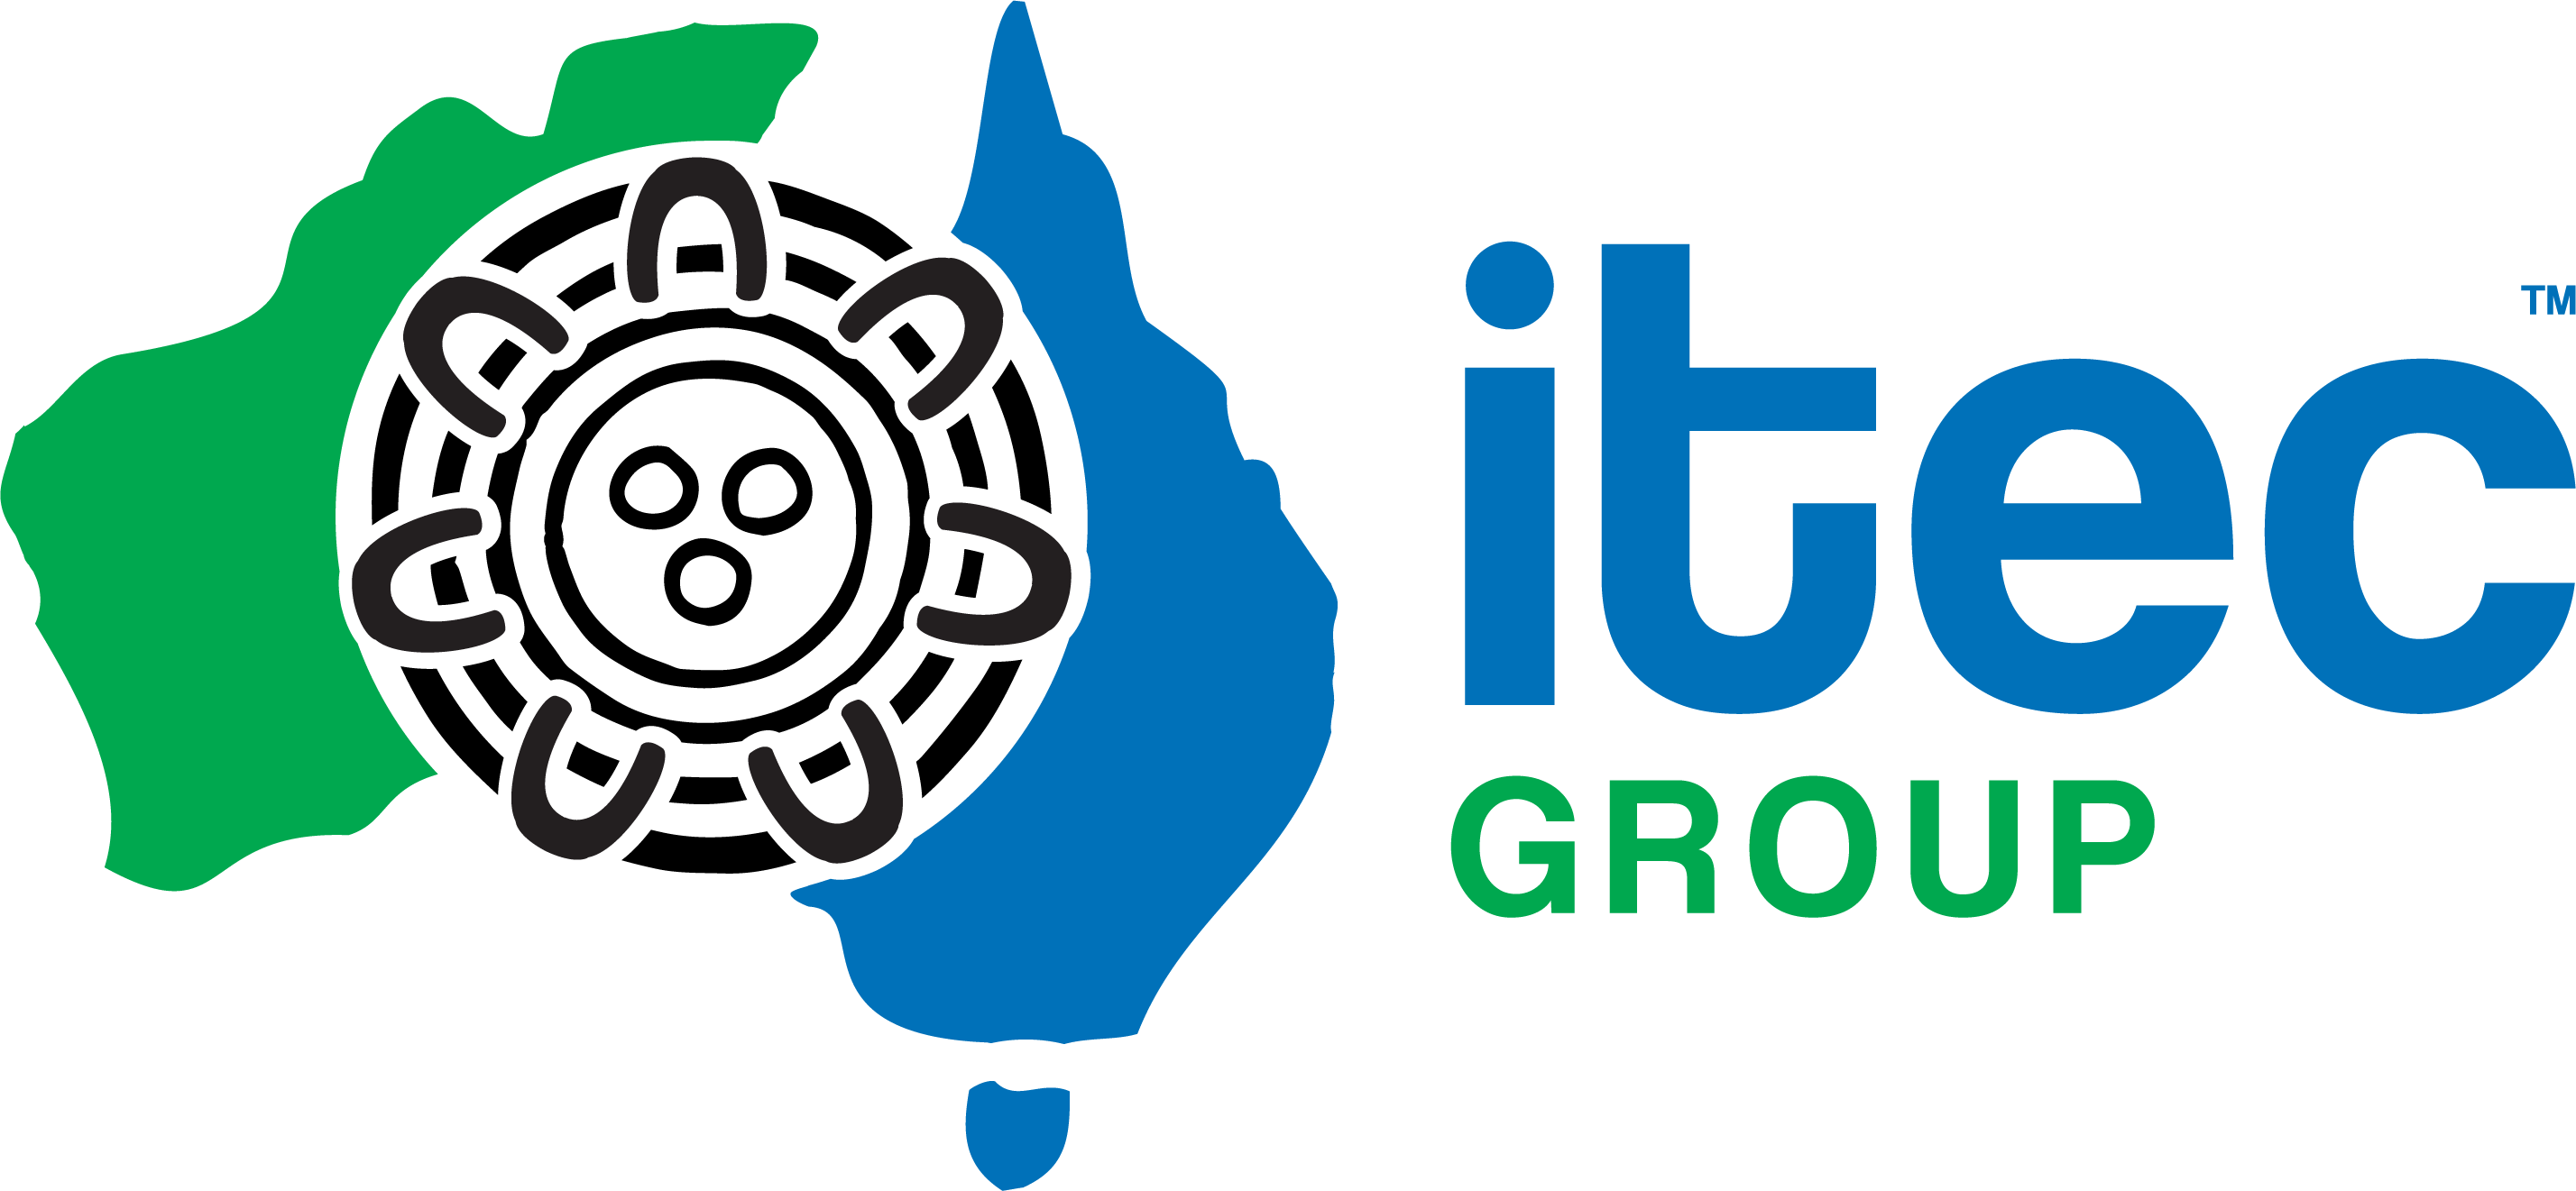 ITEC Group